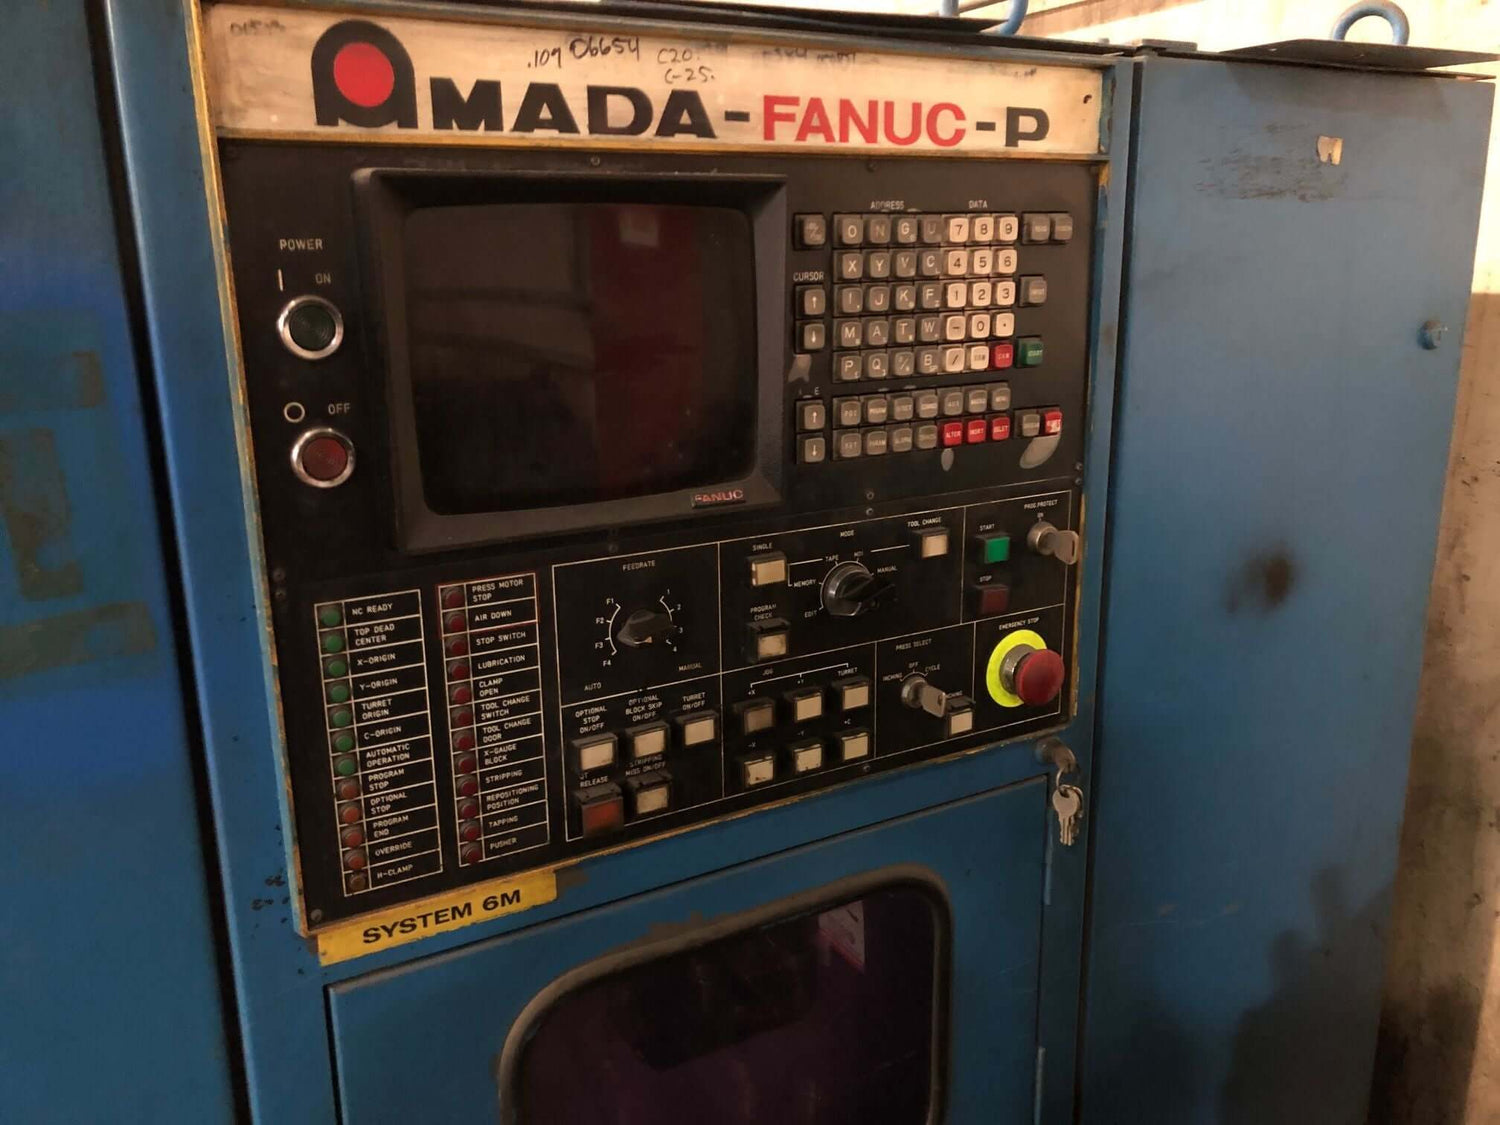 Used 33 Ton Amada Pega 344 CNC Turret Punch, Stock 1116 - Blackstone Machinery